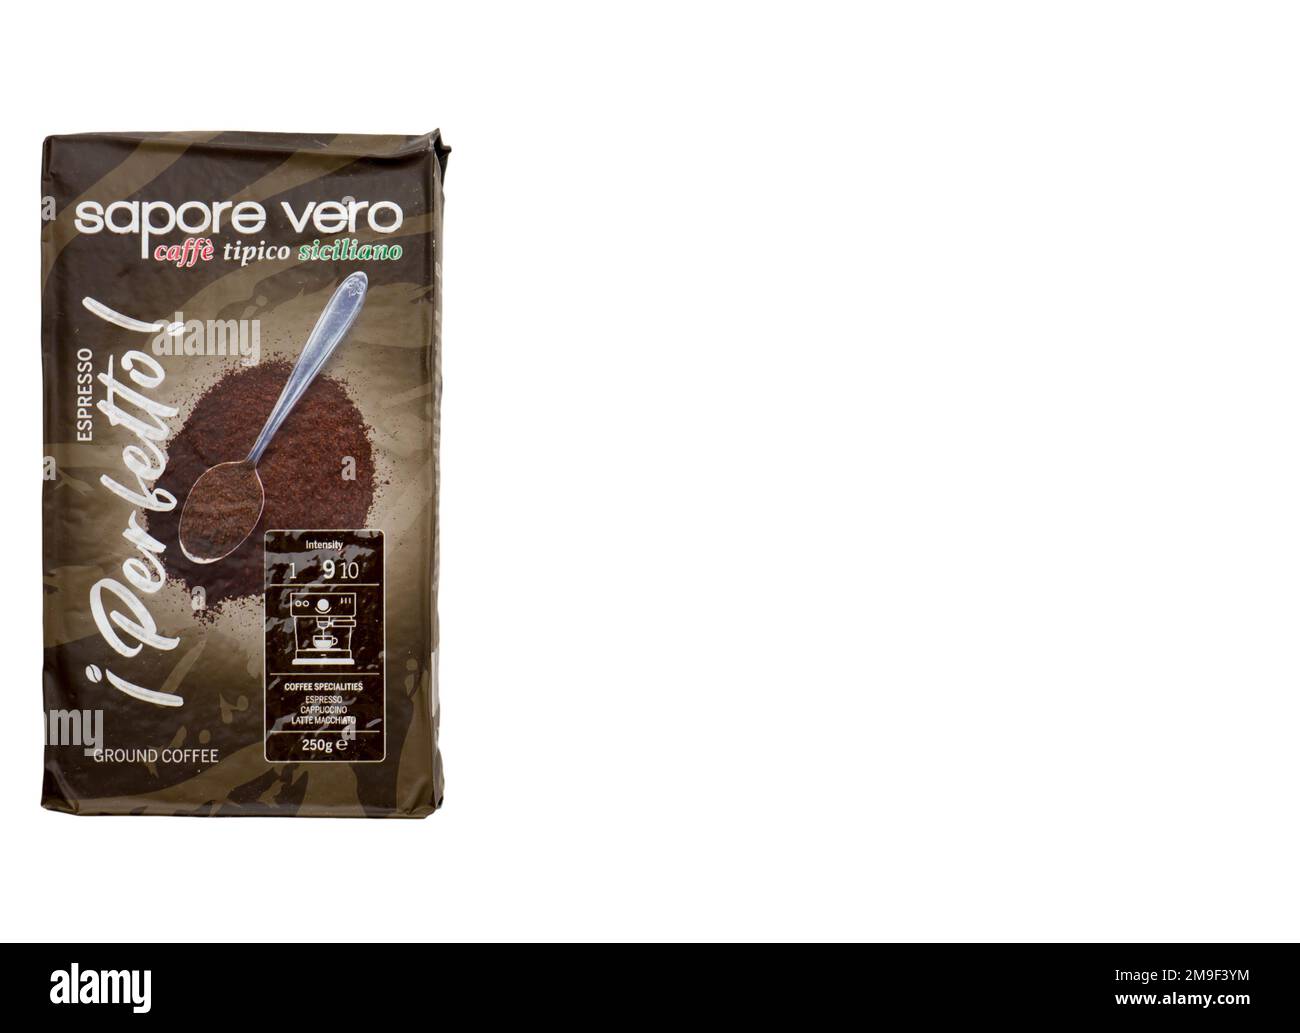 Sapore Vero Espresso Perfeto coffee. Stock Photo